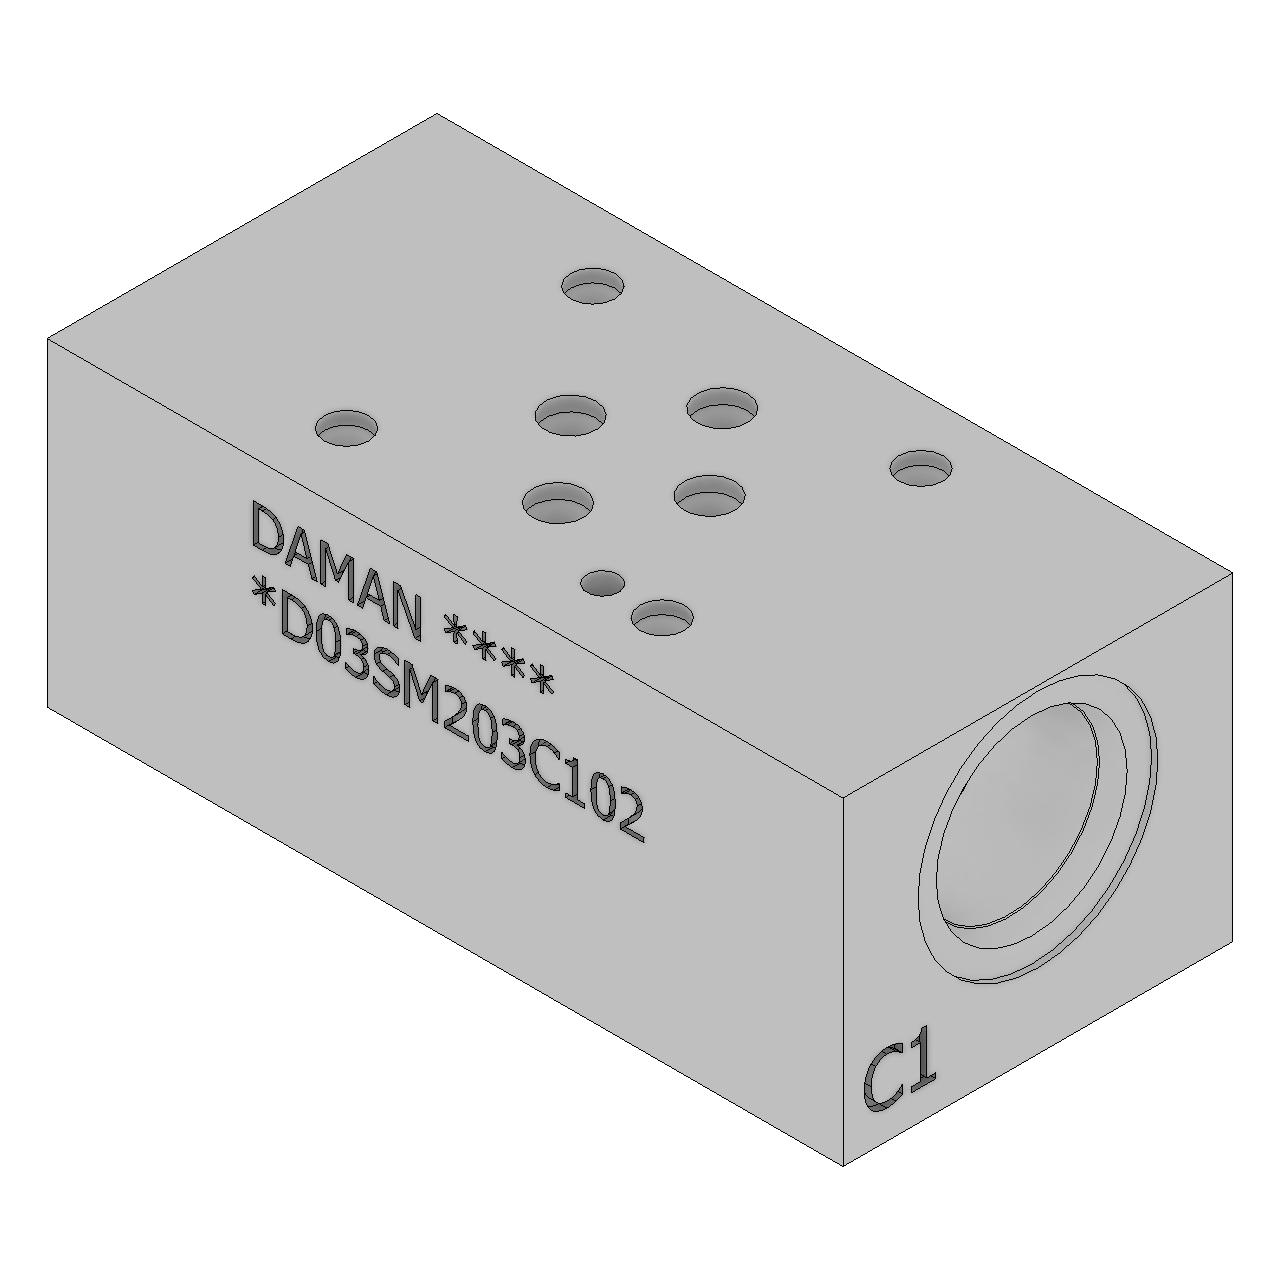 DD03SM203C102 - Sandwich Modules